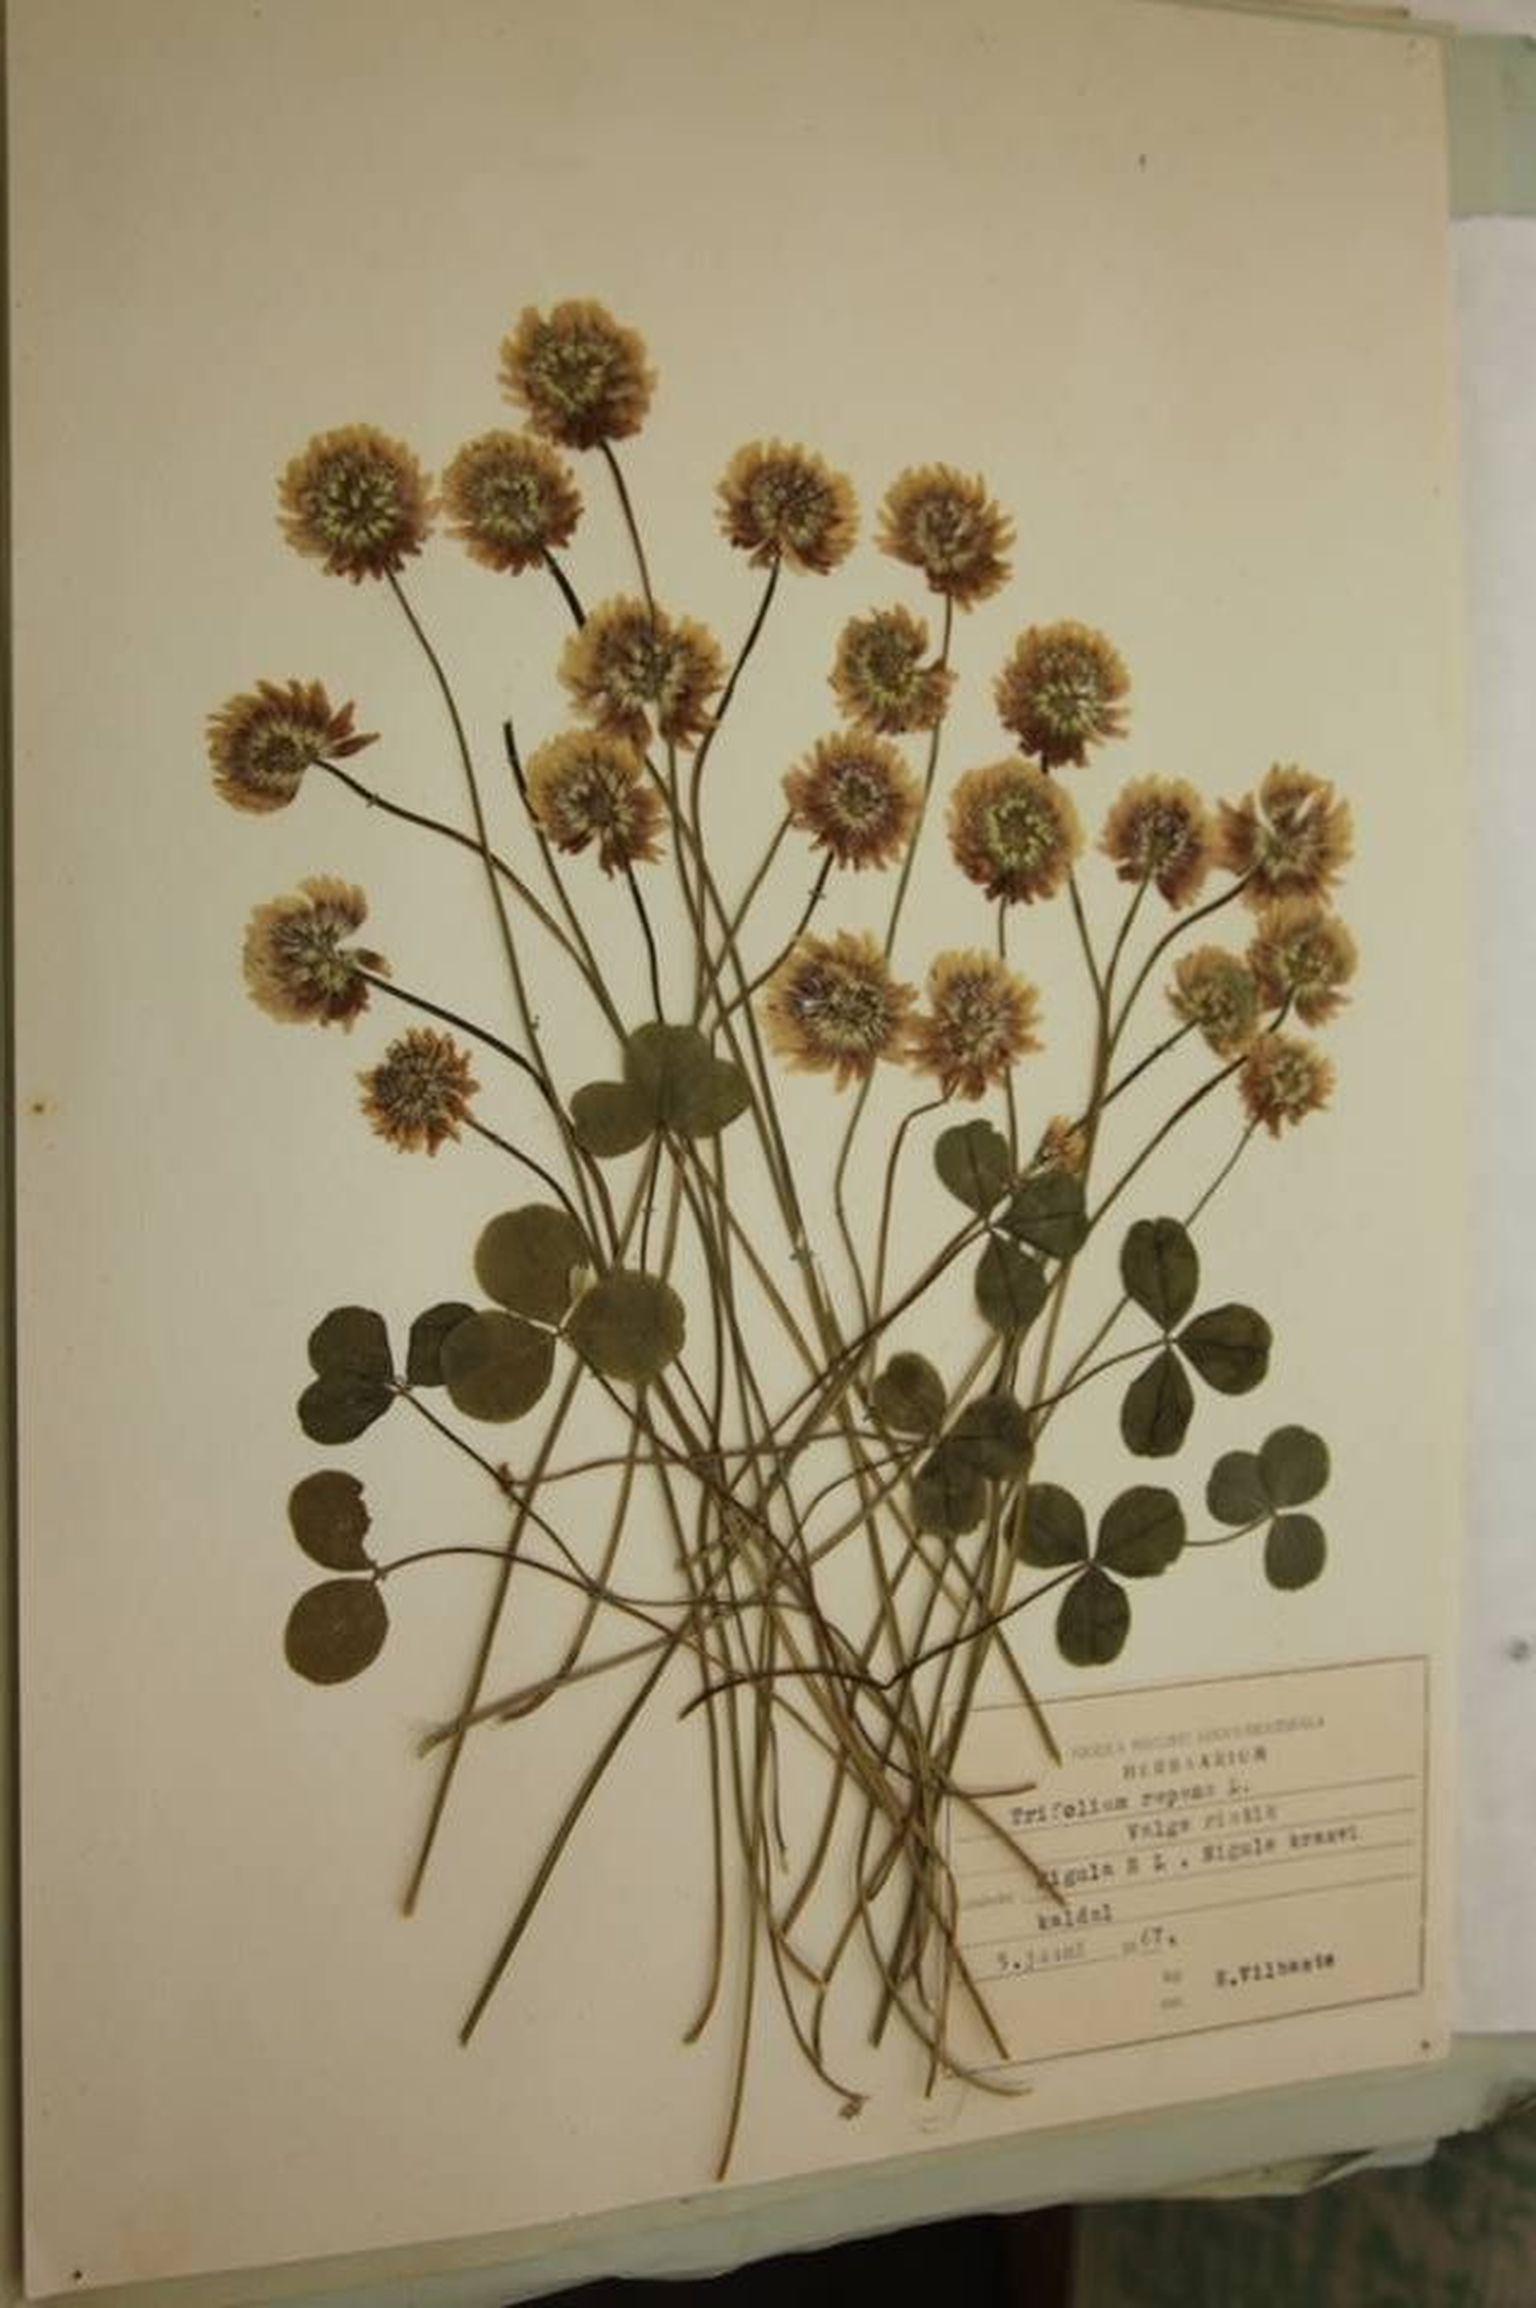 Valge ristik. Ellen Vilbaste on kunstipäraselt paigutanud ja kinnitanud taimi nii sellele kui ka paljudele teistele herbaarlehtedele teadmisega, et need jõuavad 1960. aastate lõpul ja 1970. aastate alguses näitustele vaatajate ette.